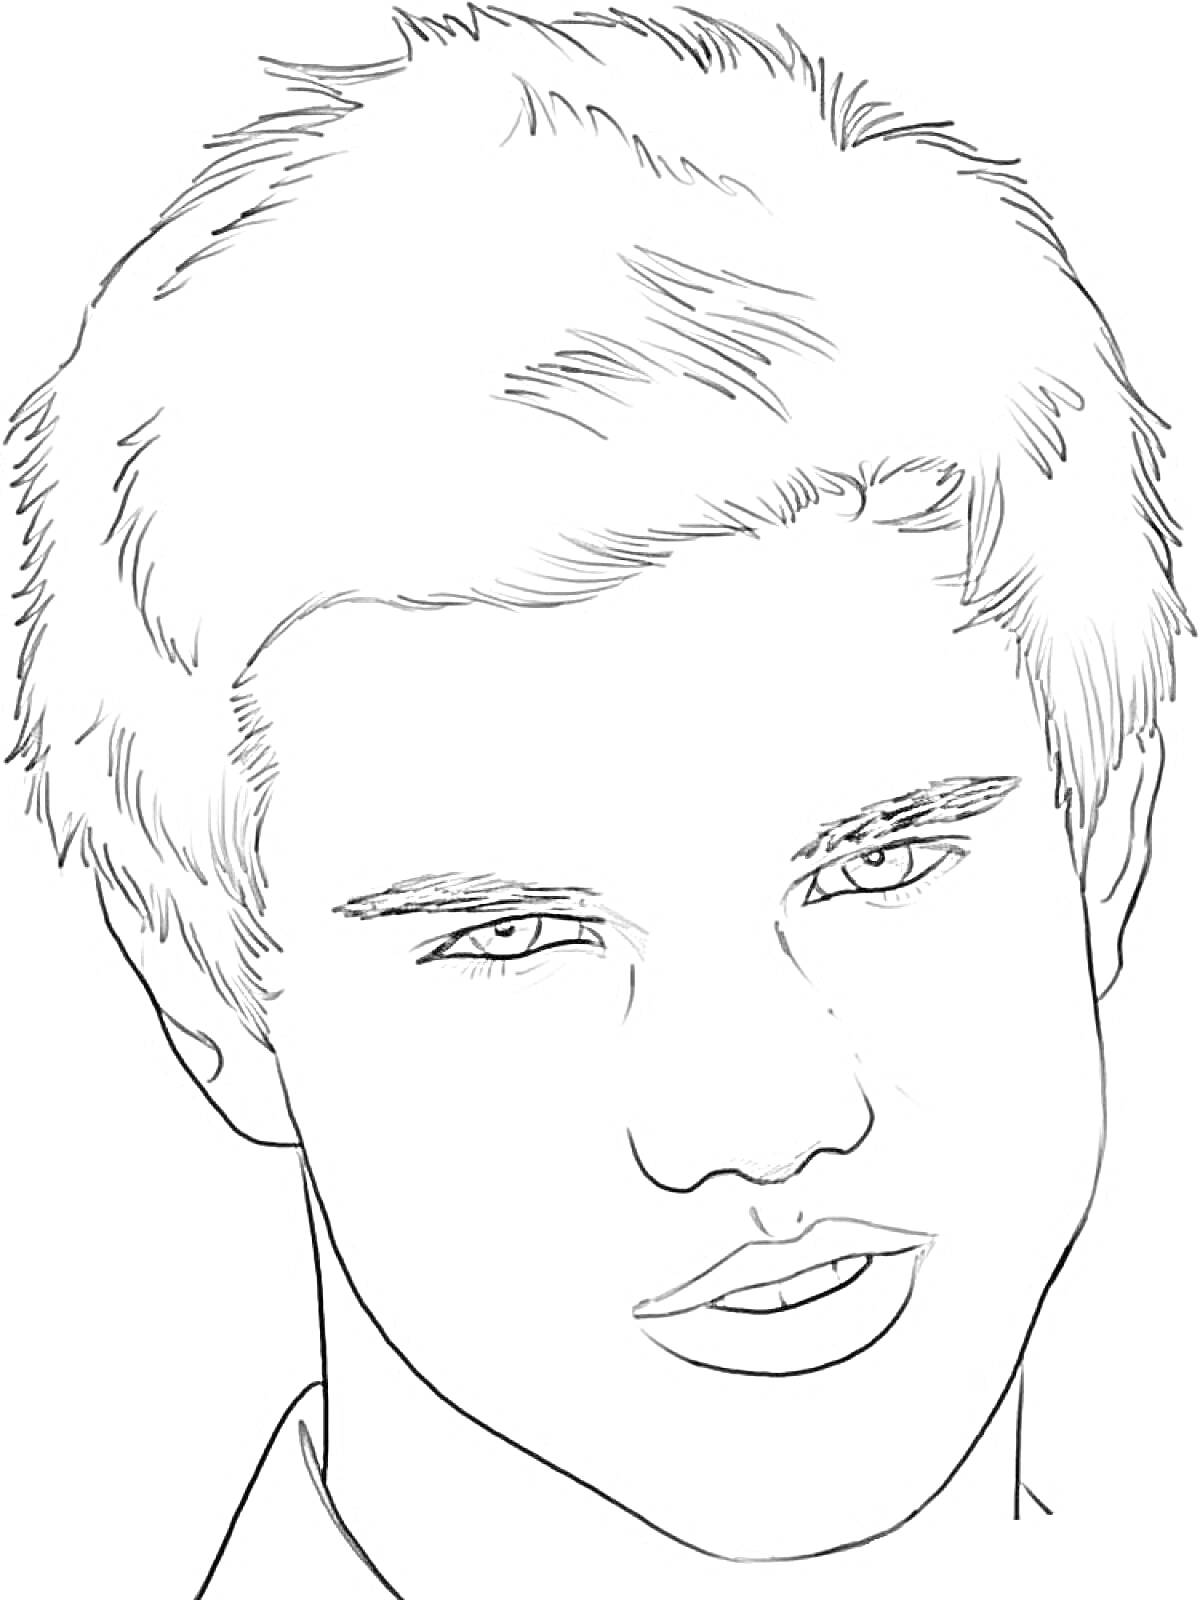 Раскраска Портрет молодого человека с короткой стрижкой и выразительными глазами